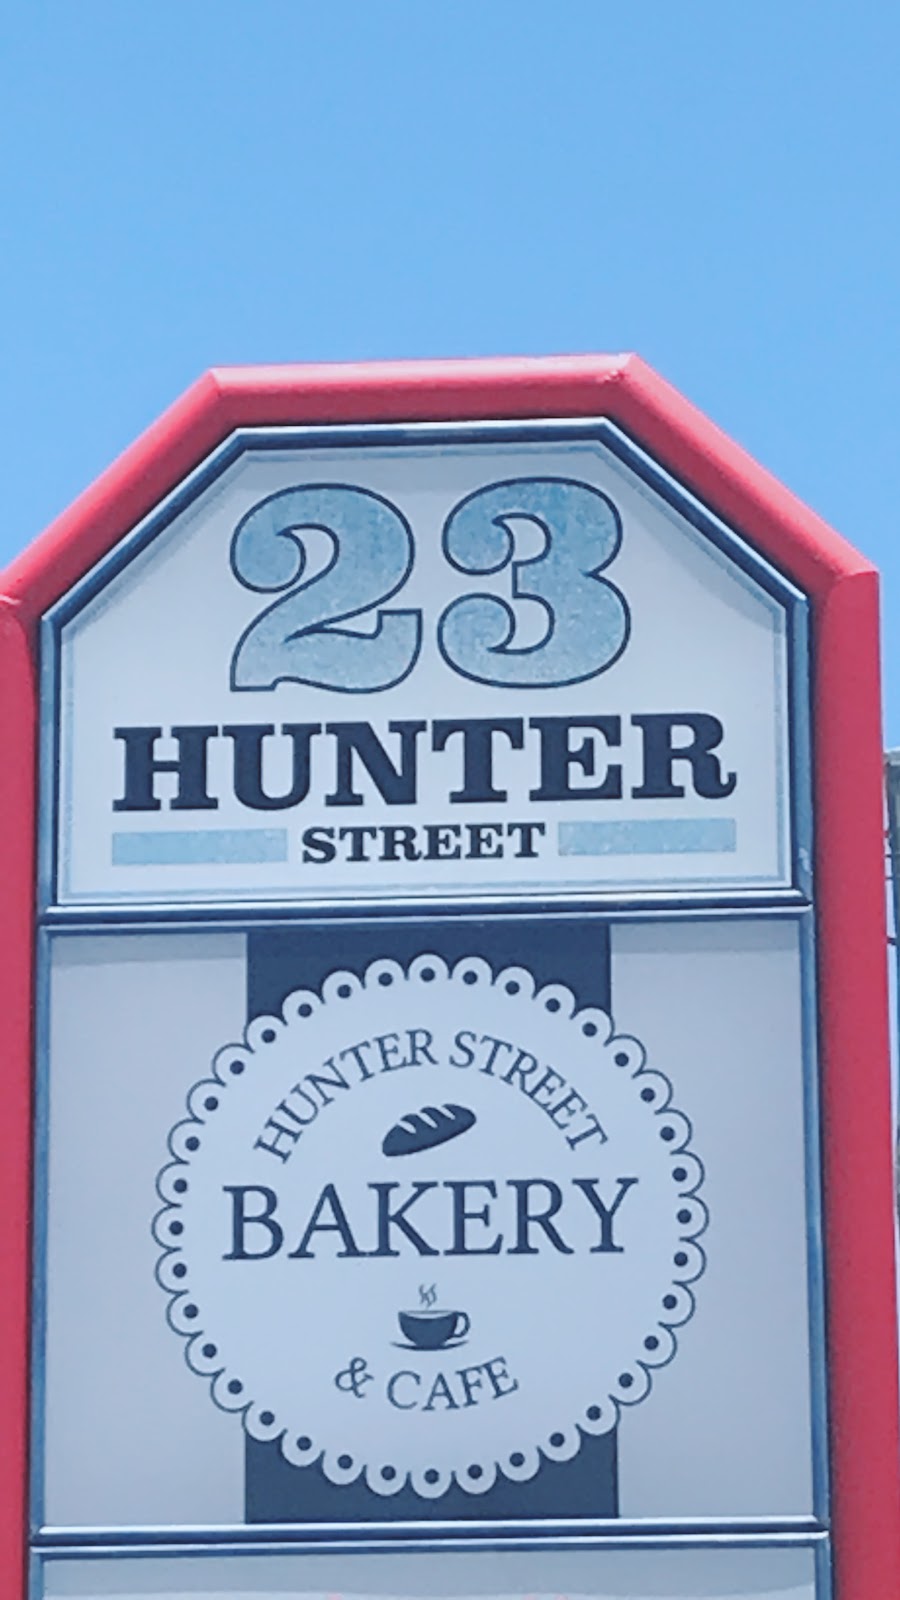 Hunter st bakery (23 Hunter St) Opening Hours